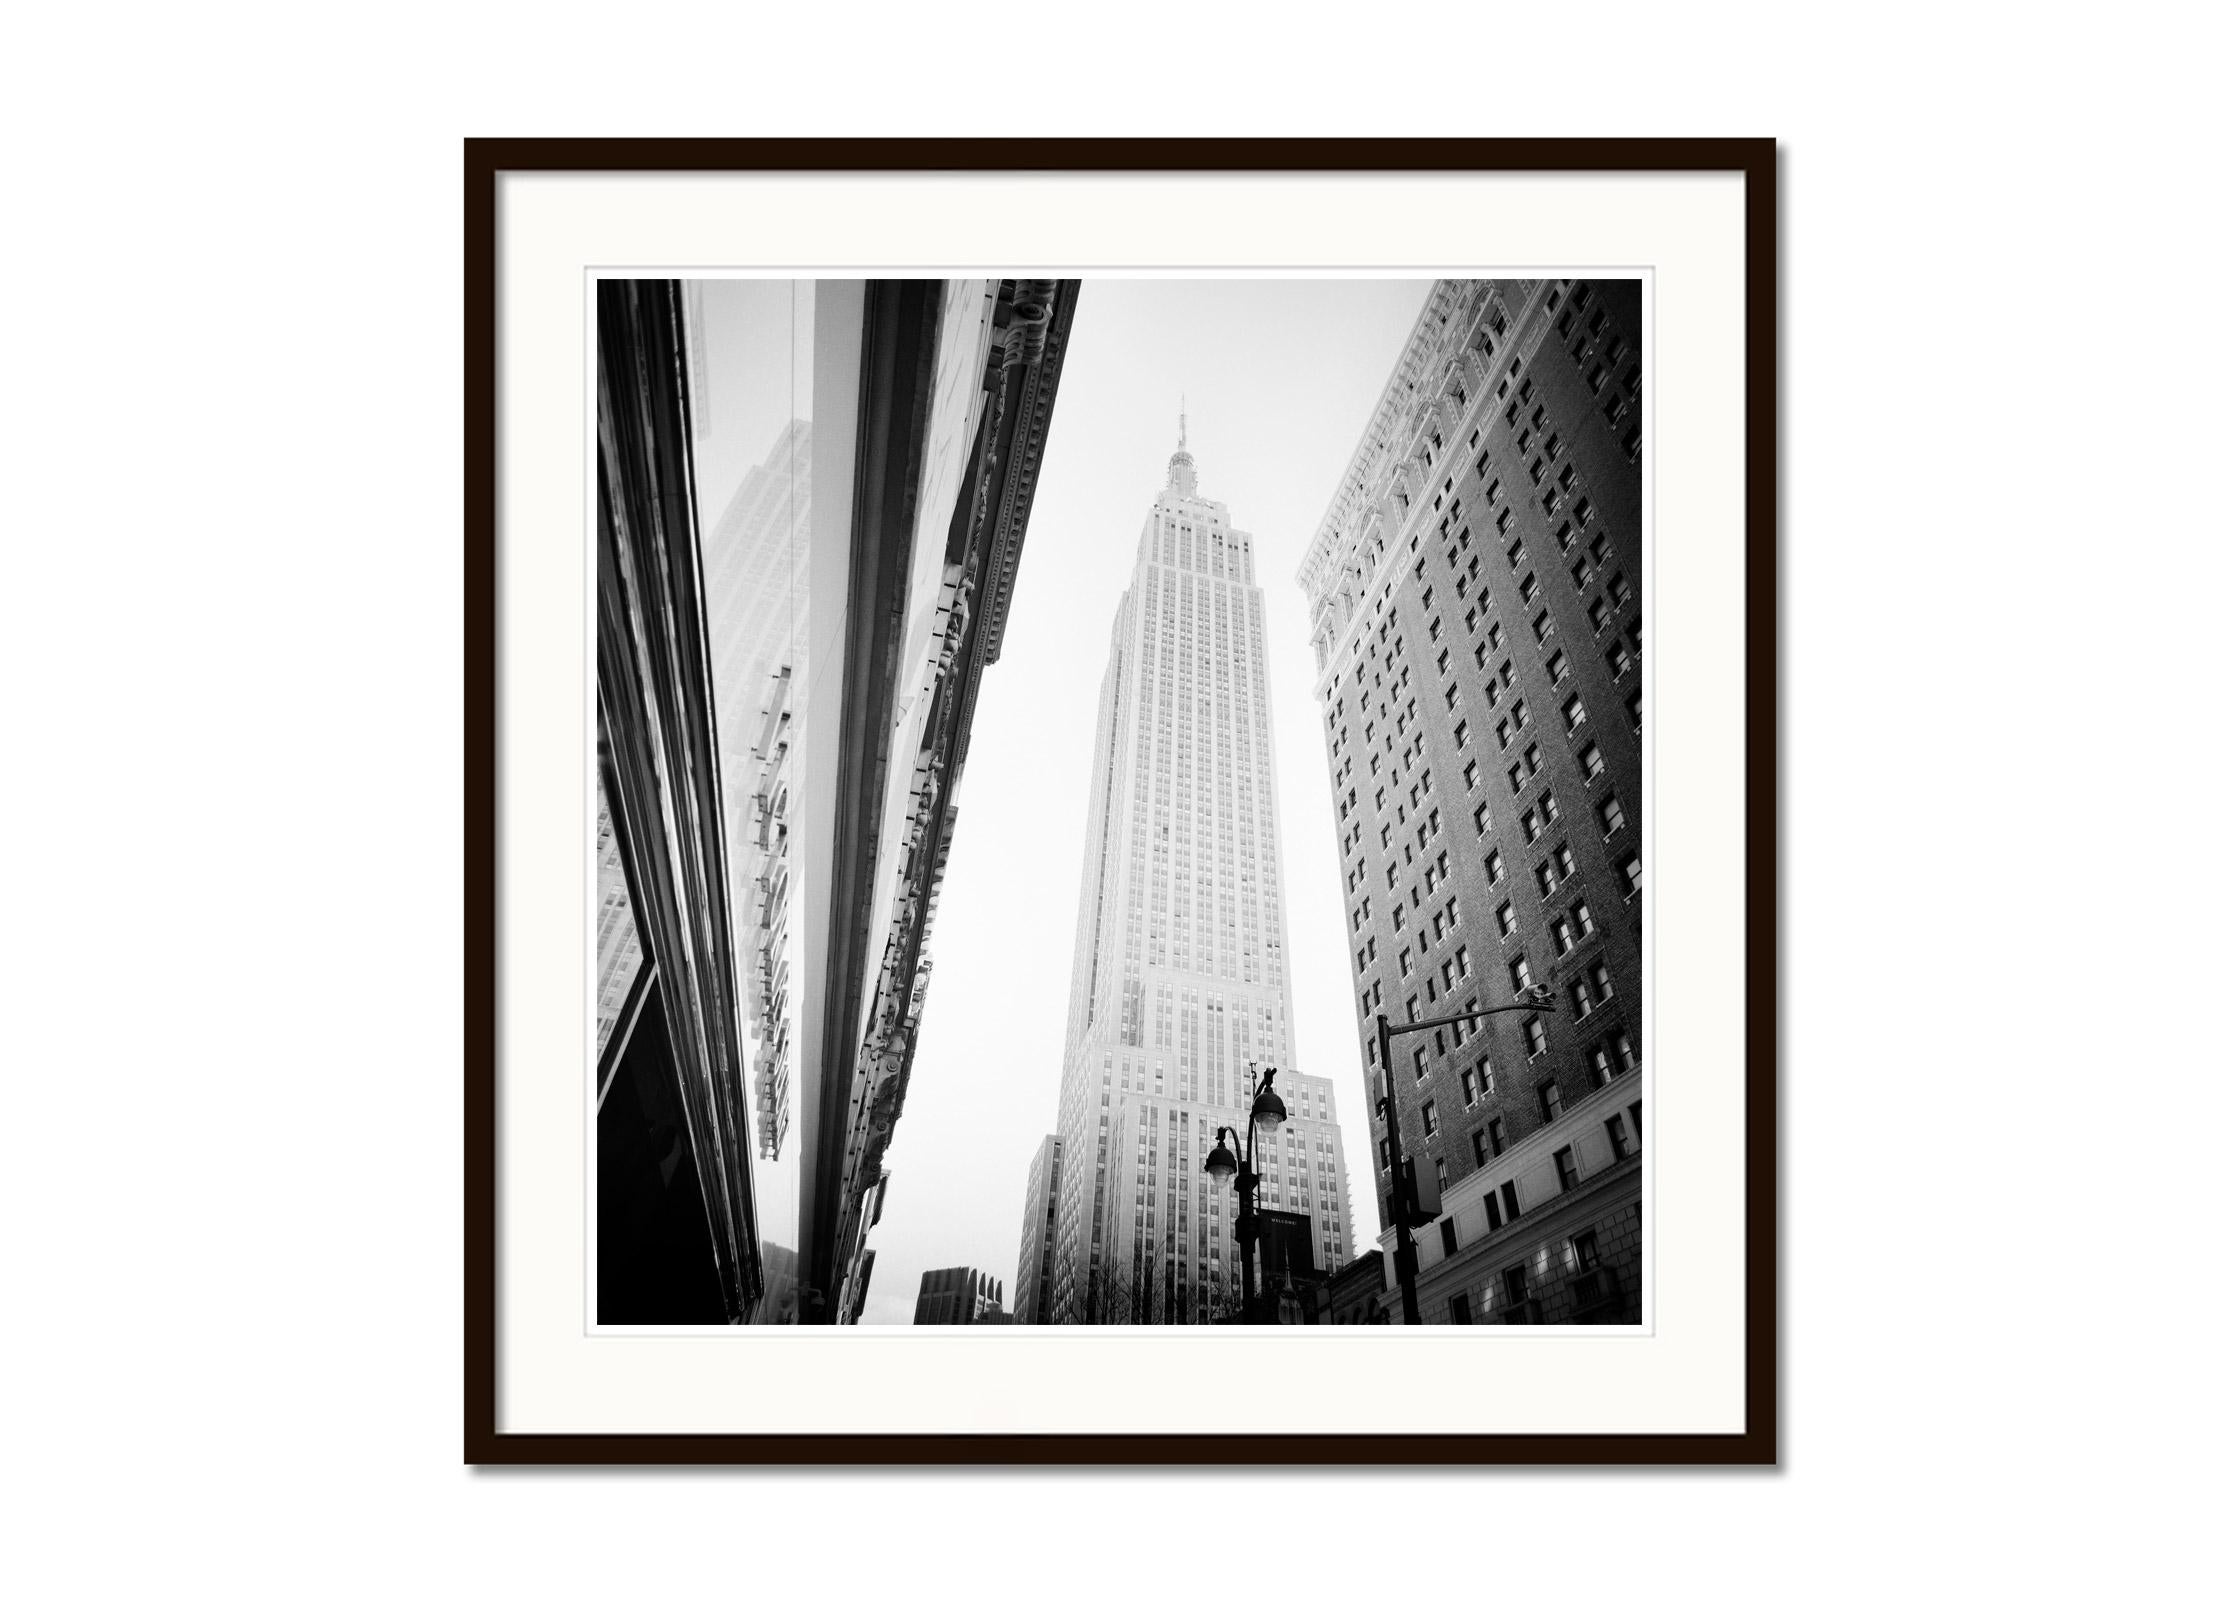 Victorias Secret, Empire State Building, New York, Schwarz-Weiß-Fotografie (Grau), Black and White Photograph, von Gerald Berghammer